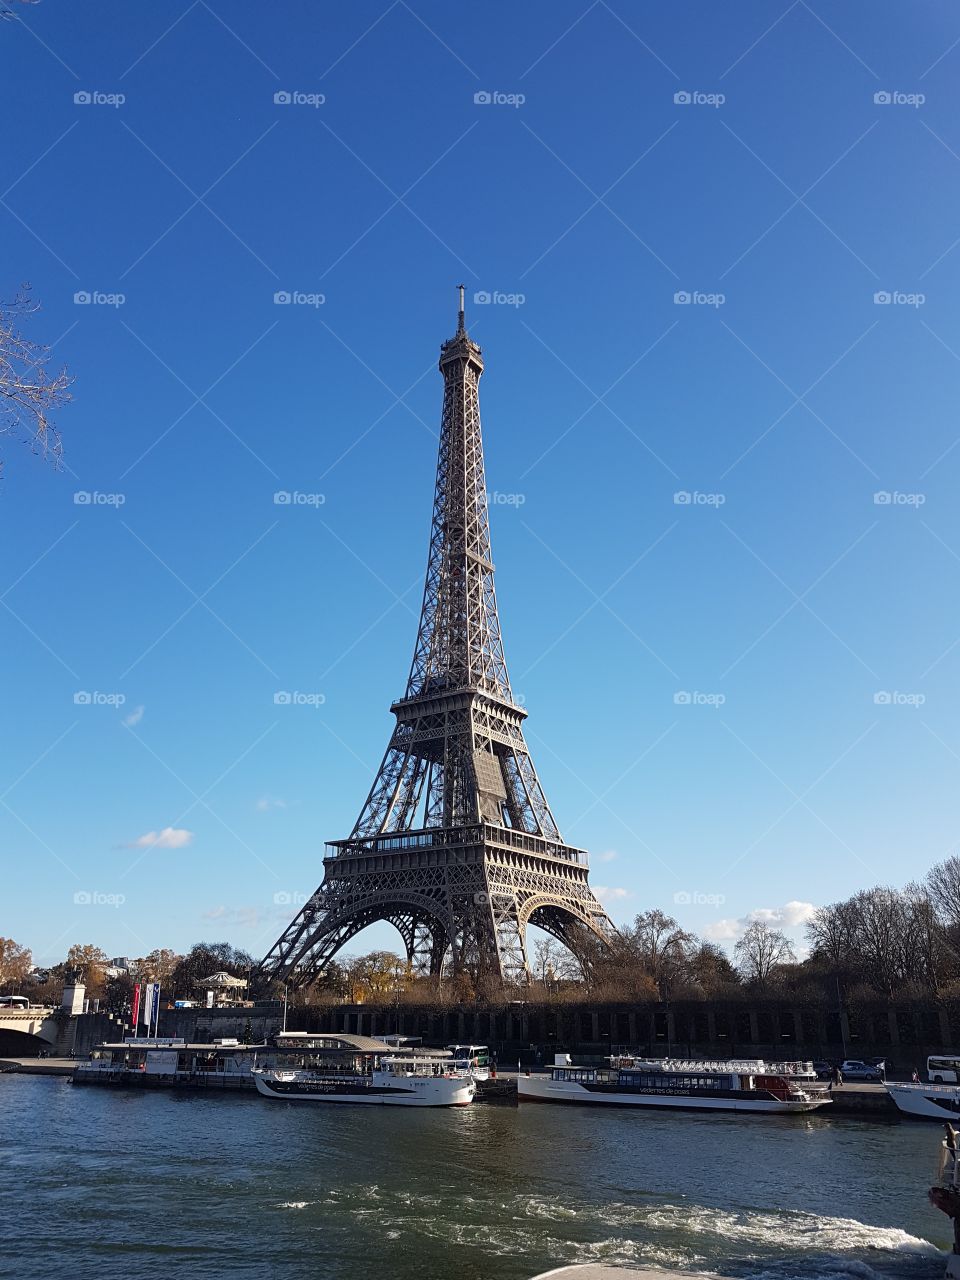 Eiffel Tower with River Seine